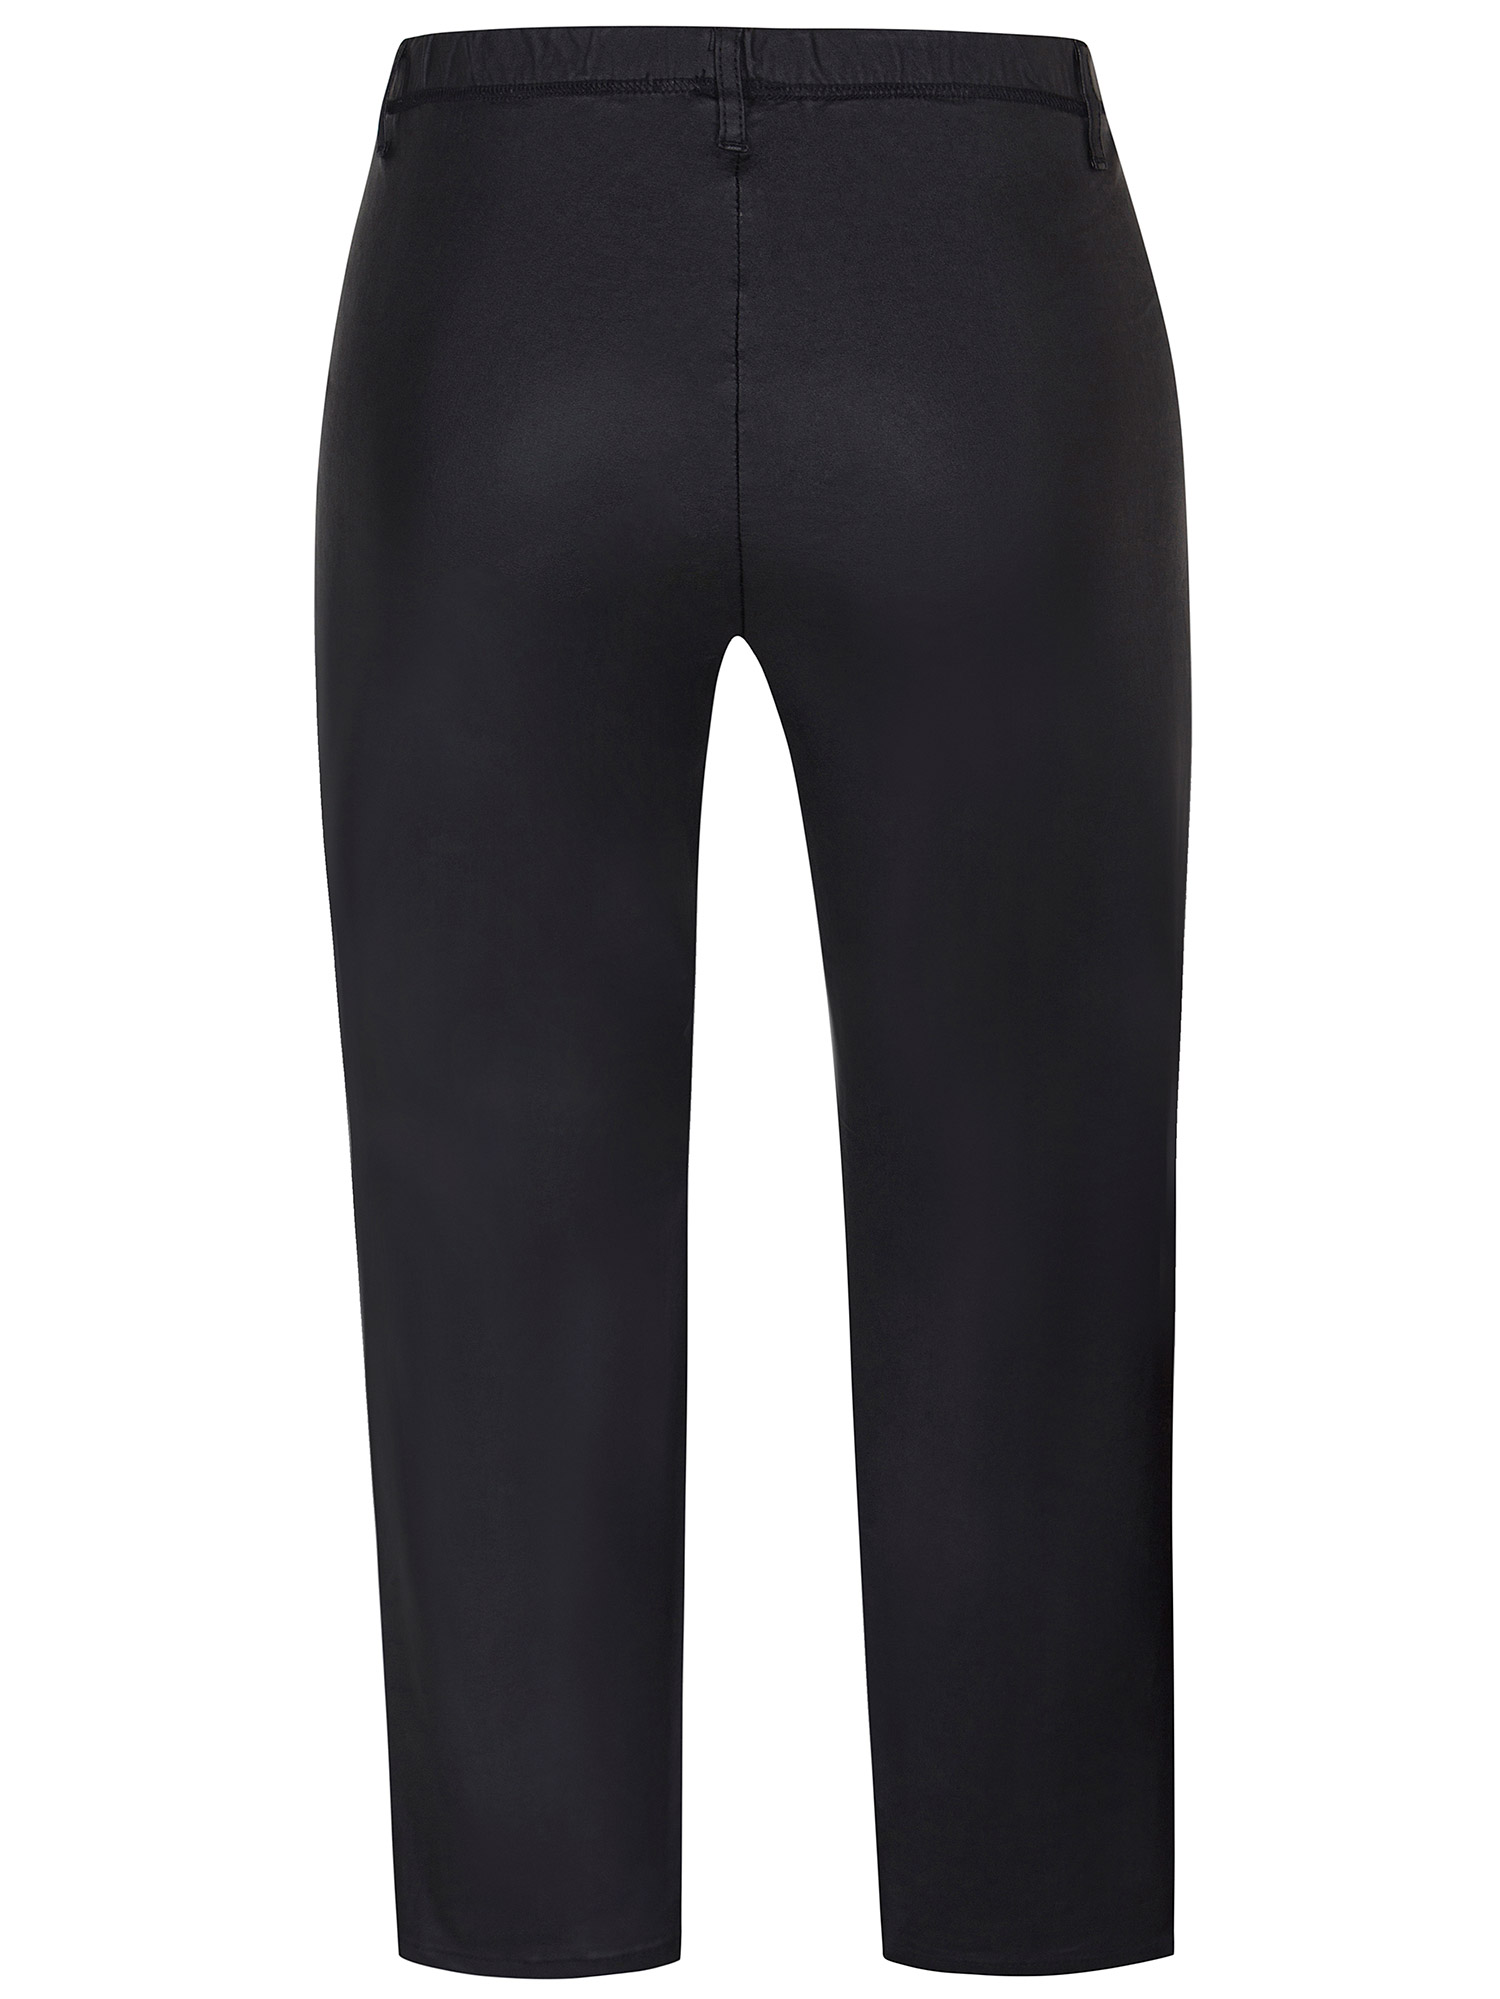 TWIST - Svarta leggings med fickor i läderutseende fra Zhenzi